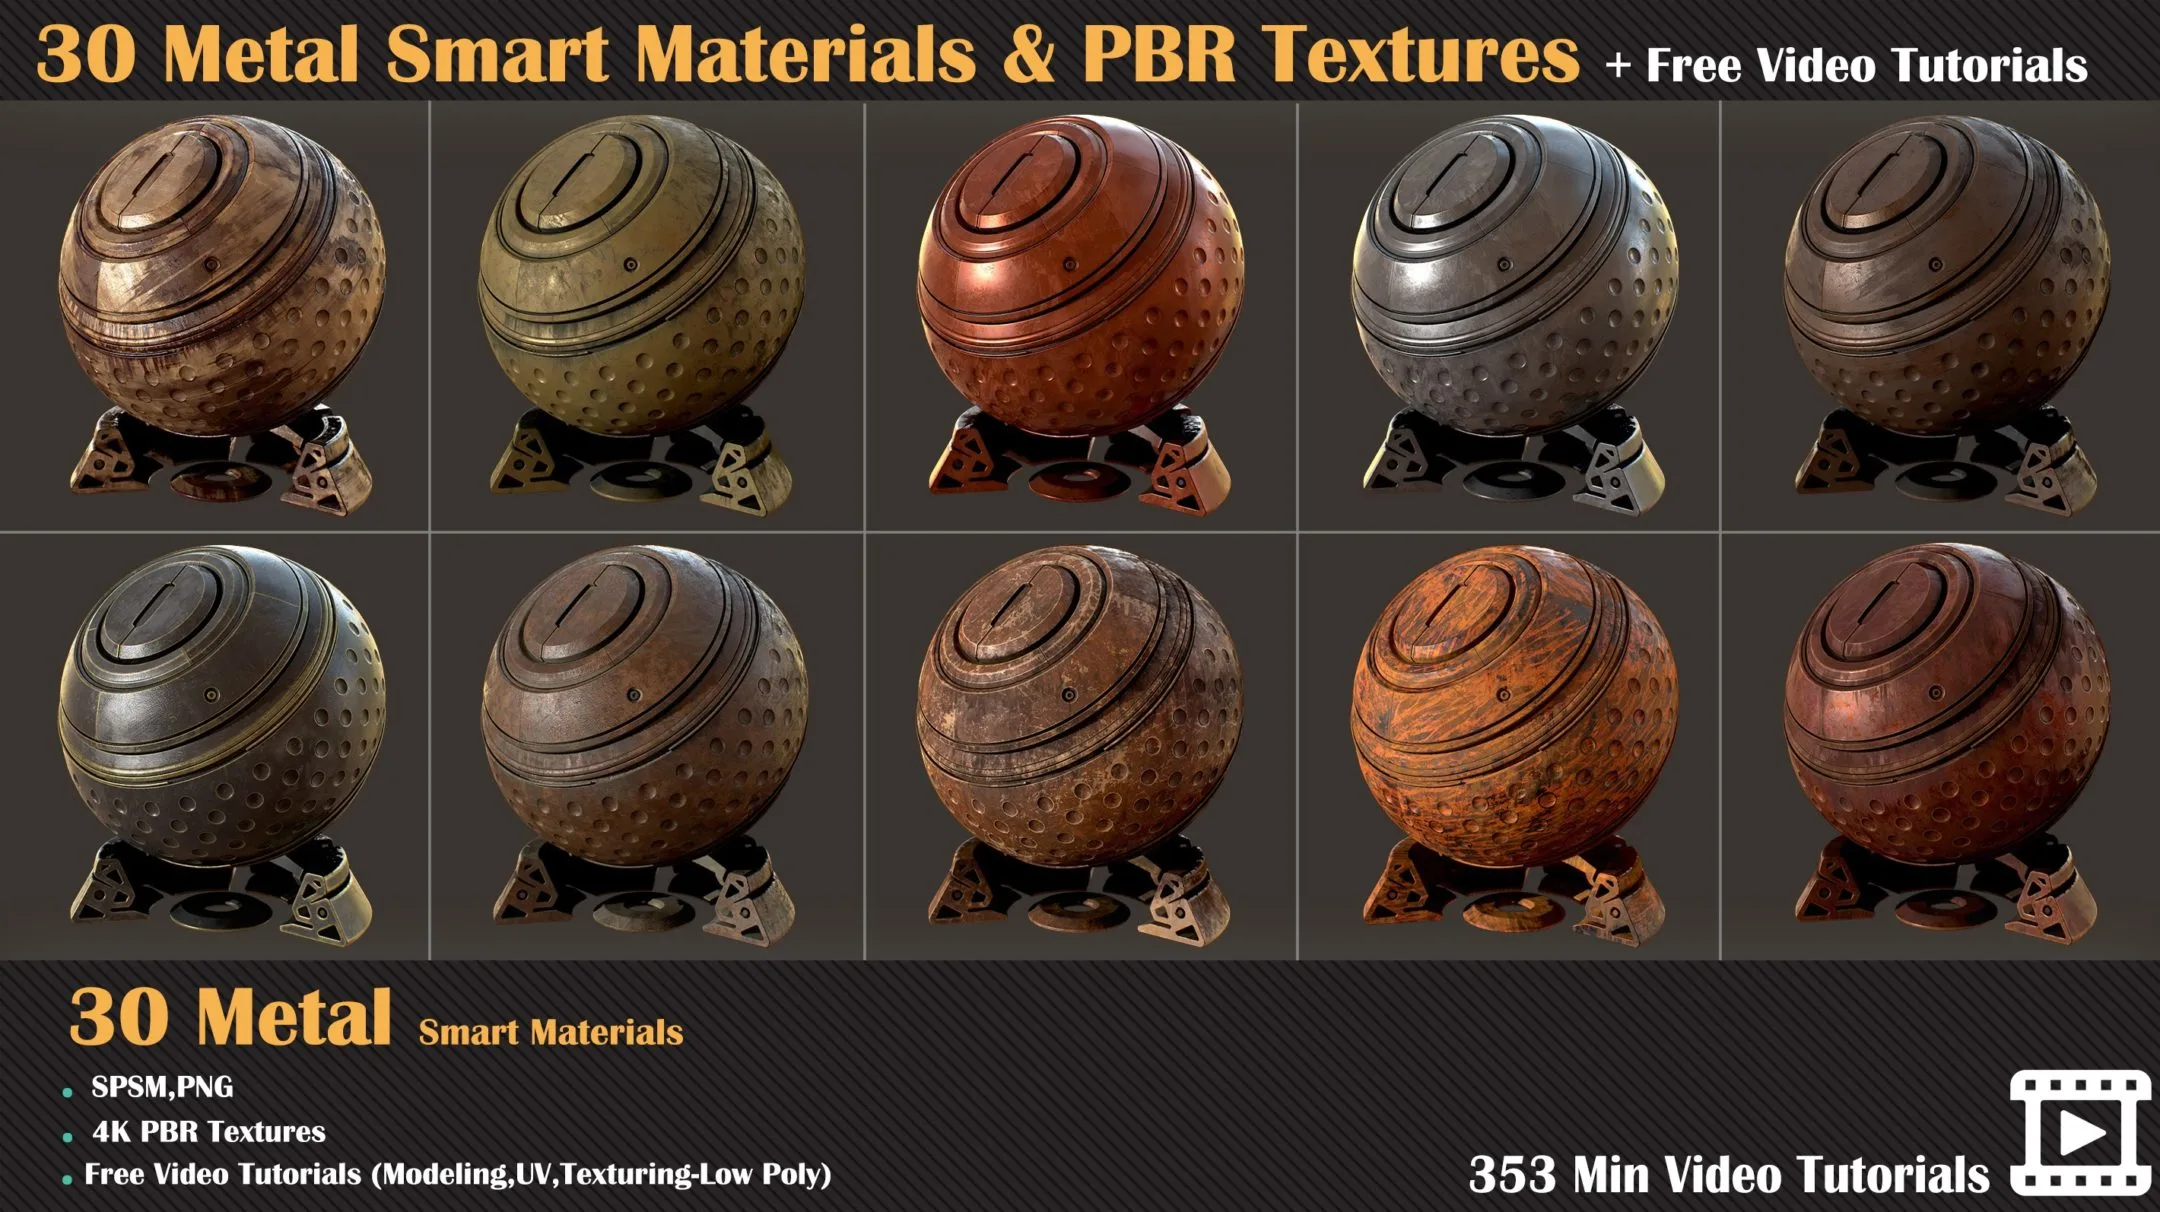 30 Metal Smart Materials + PBR Textures + Free Video Tutorials